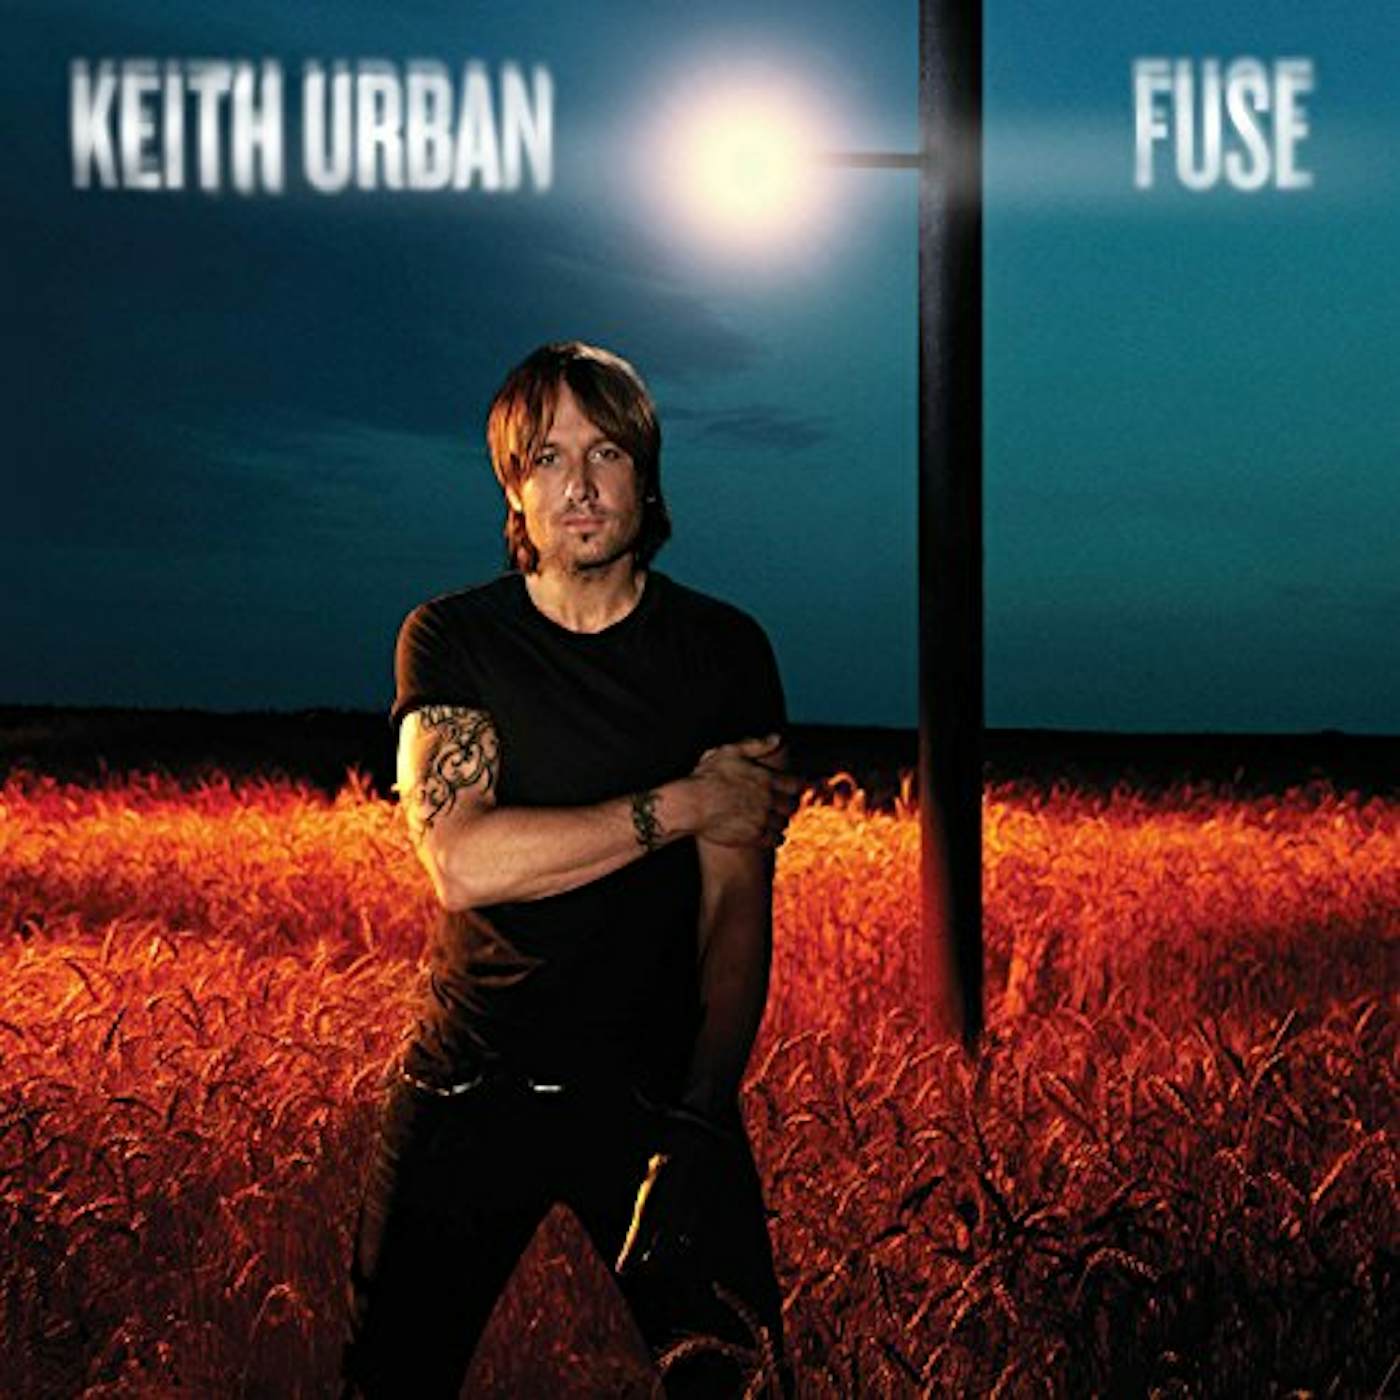 Keith Urban Fuse Vinyl Record